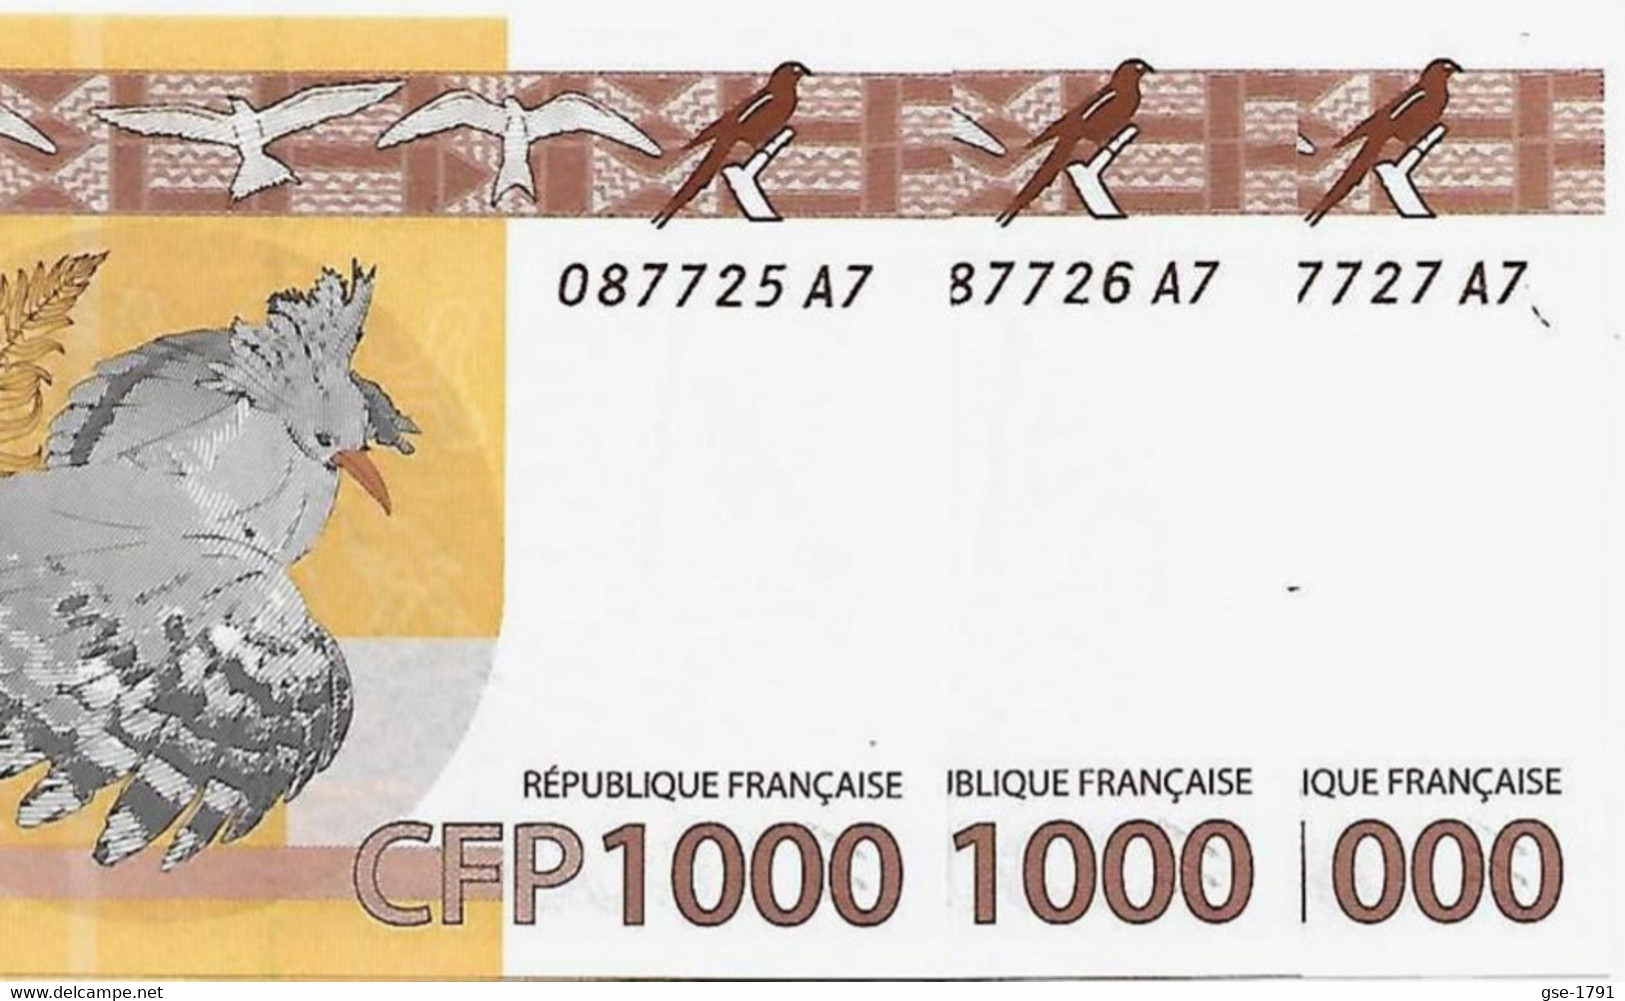 IEOM : Nlle CALEDONIE, TAHITI ,WALLIS  Nouveaux  Billets De 100 Francs 2014 Lot De3  NEUFS - Französisch-Pazifik Gebiete (1992-...)